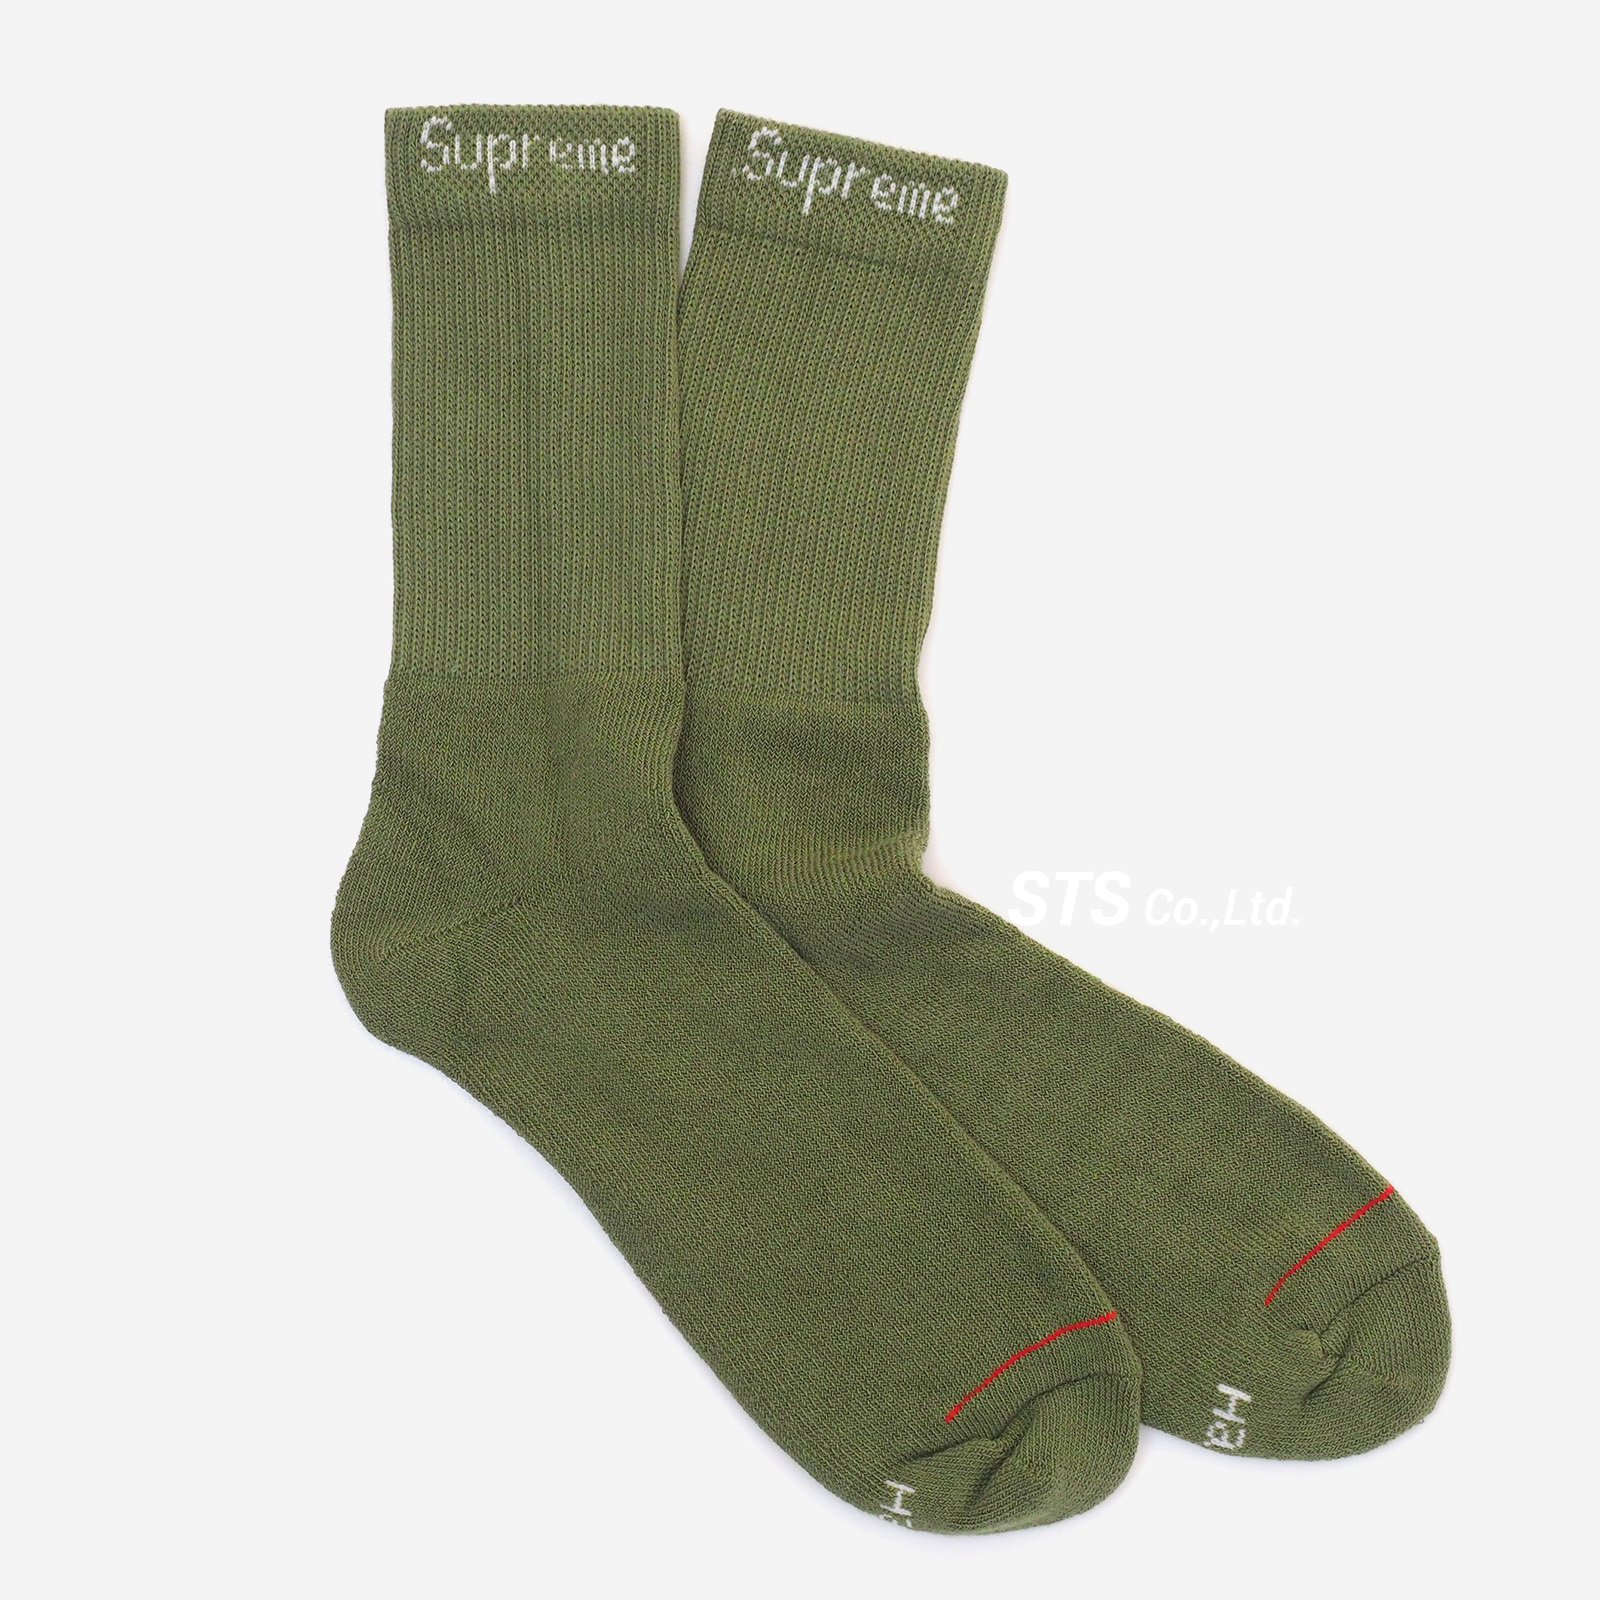 Supreme/Hanes Crew Socks (4 Pack) - Olive - ParkSIDER